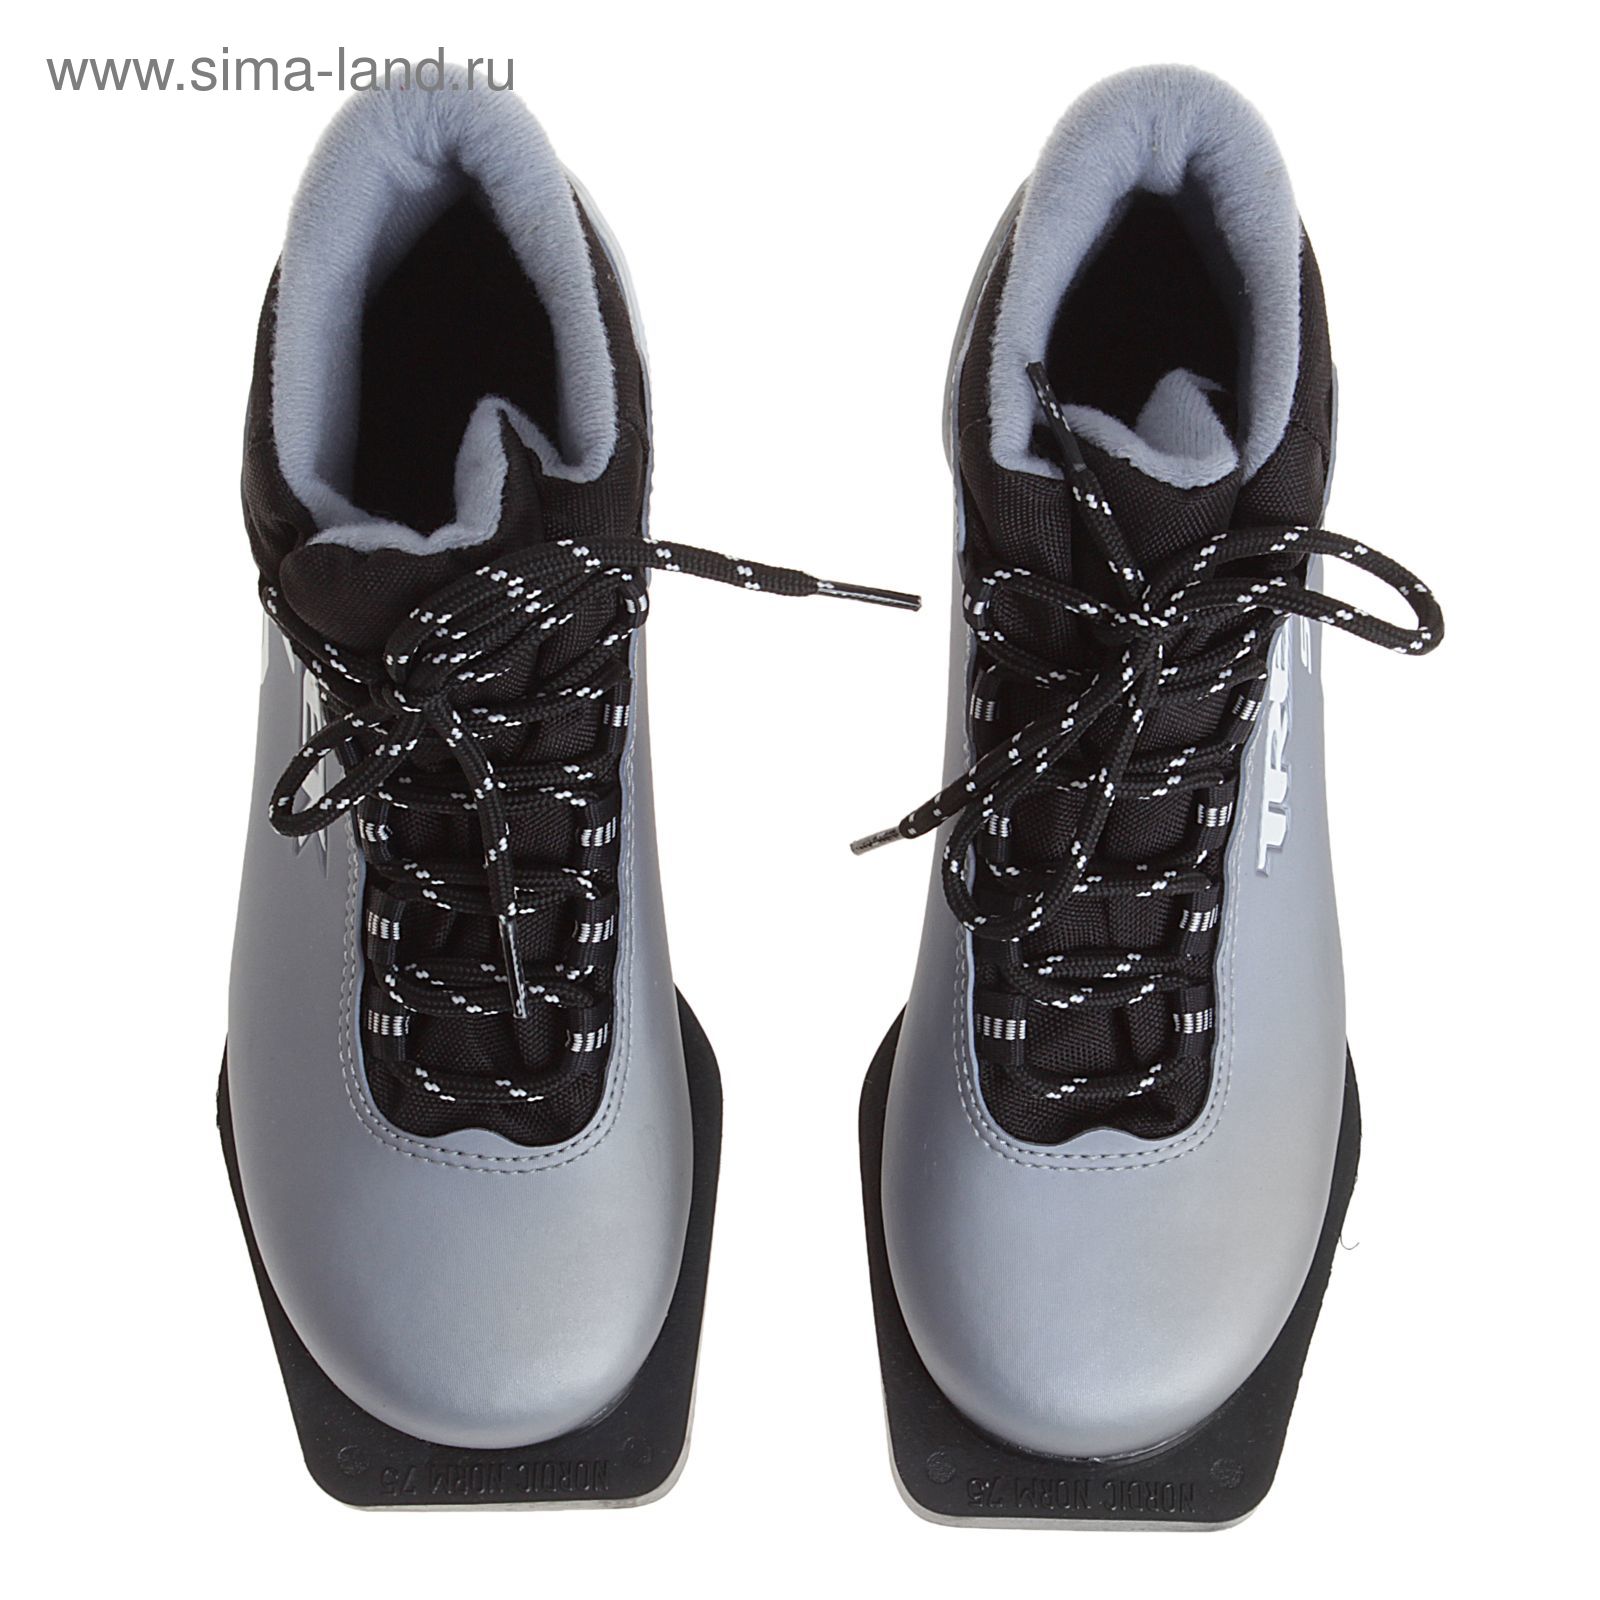 Ботинки лыжные TREK Soul NN 75 ИК (серый металл NN 75 ИК, лого черный) (р. 35)